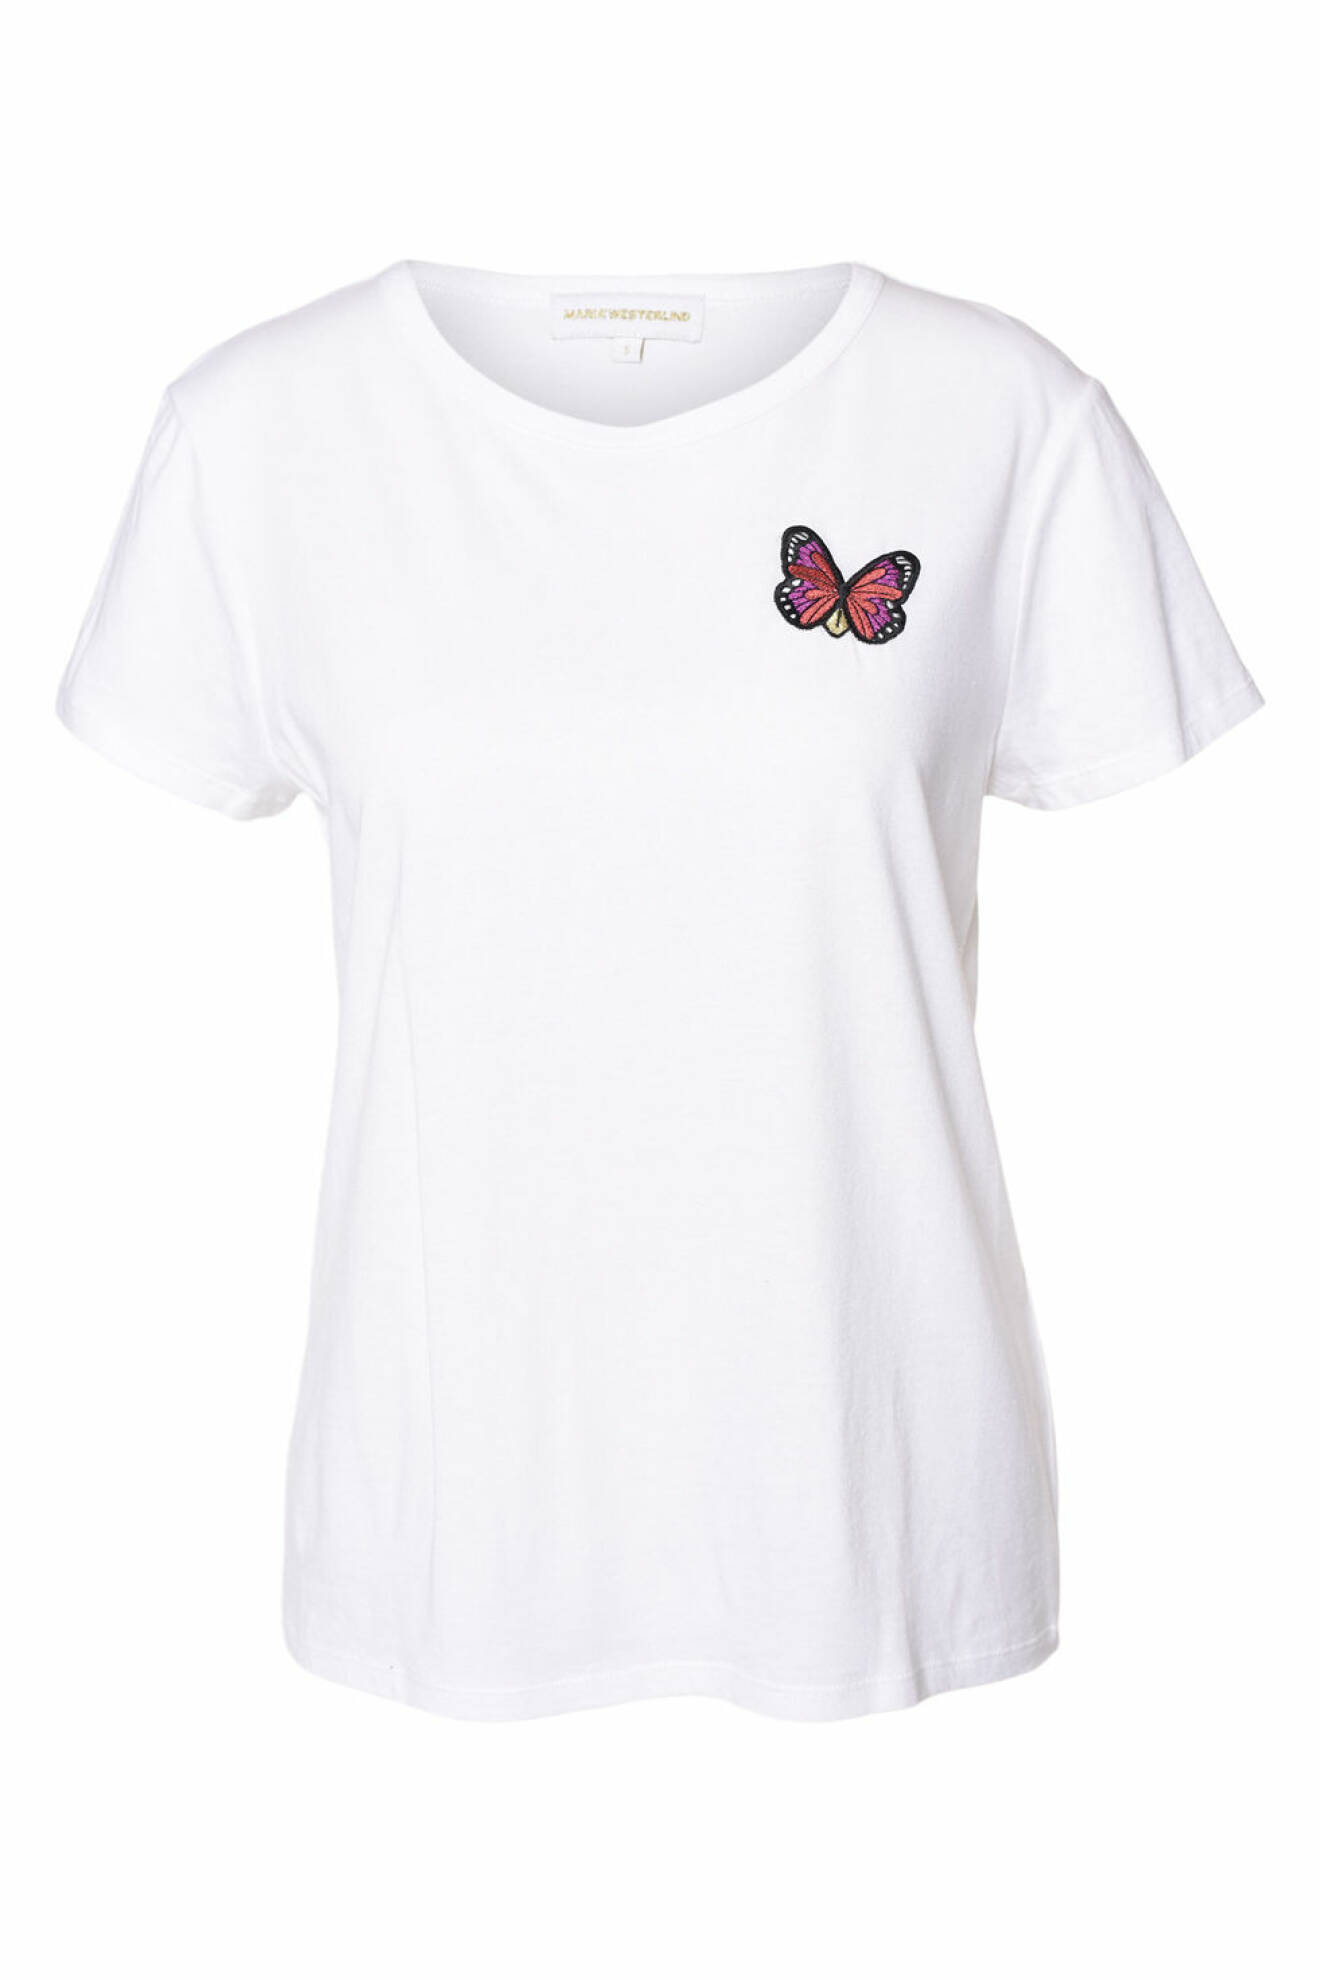 Maria Westerlind x MQ vit t-shirt